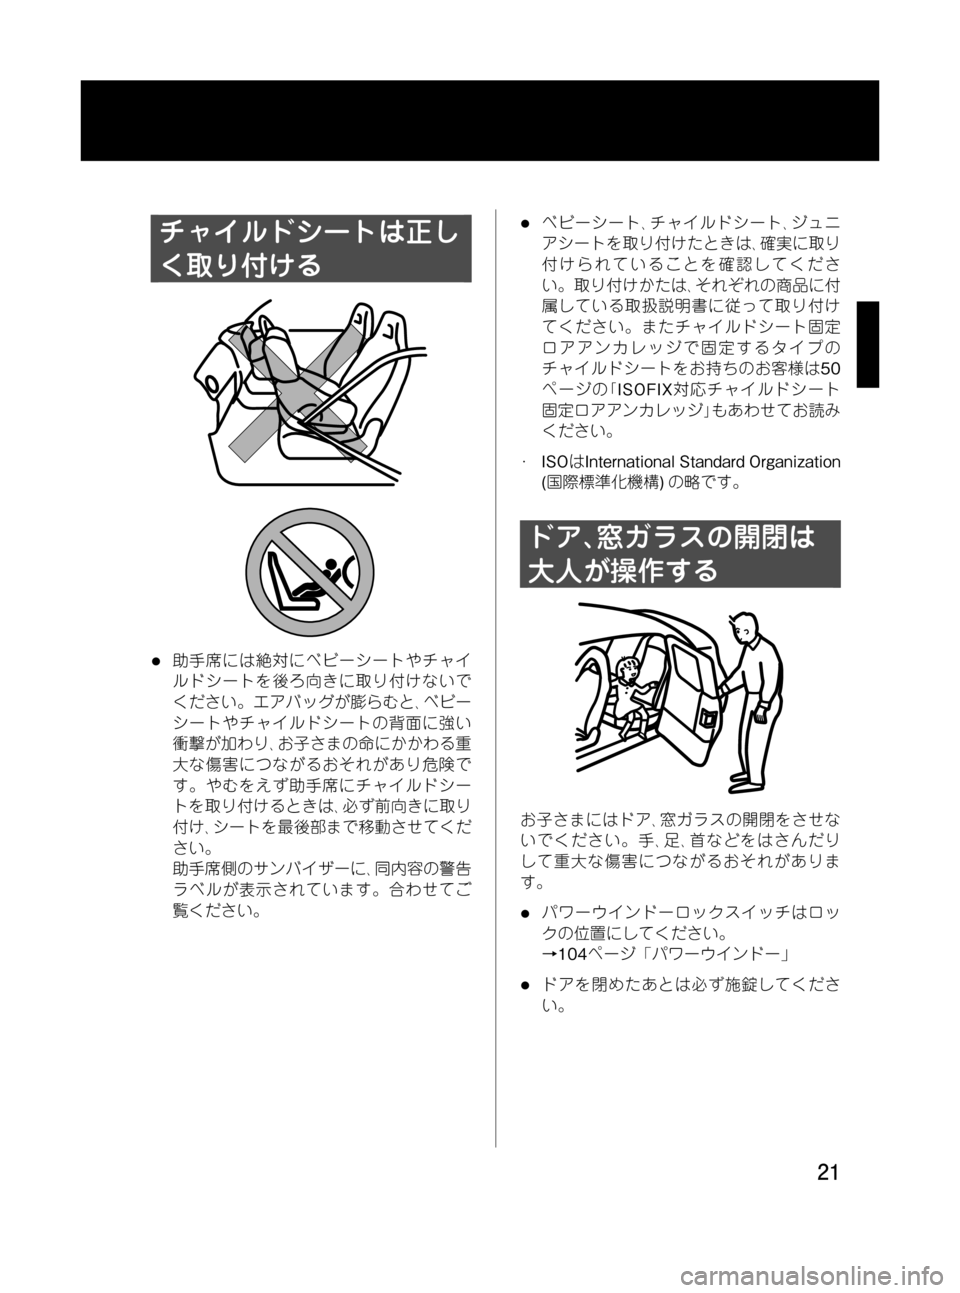 MAZDA MODEL RX 8 2008  取扱説明書 (in Japanese) Black plate (21,1)
チャイルドシートは正し
く取り付ける
l助手席には絶対にベビーシートやチャイ
ルドシートを後ろ向きに取り付けないで
ください。�